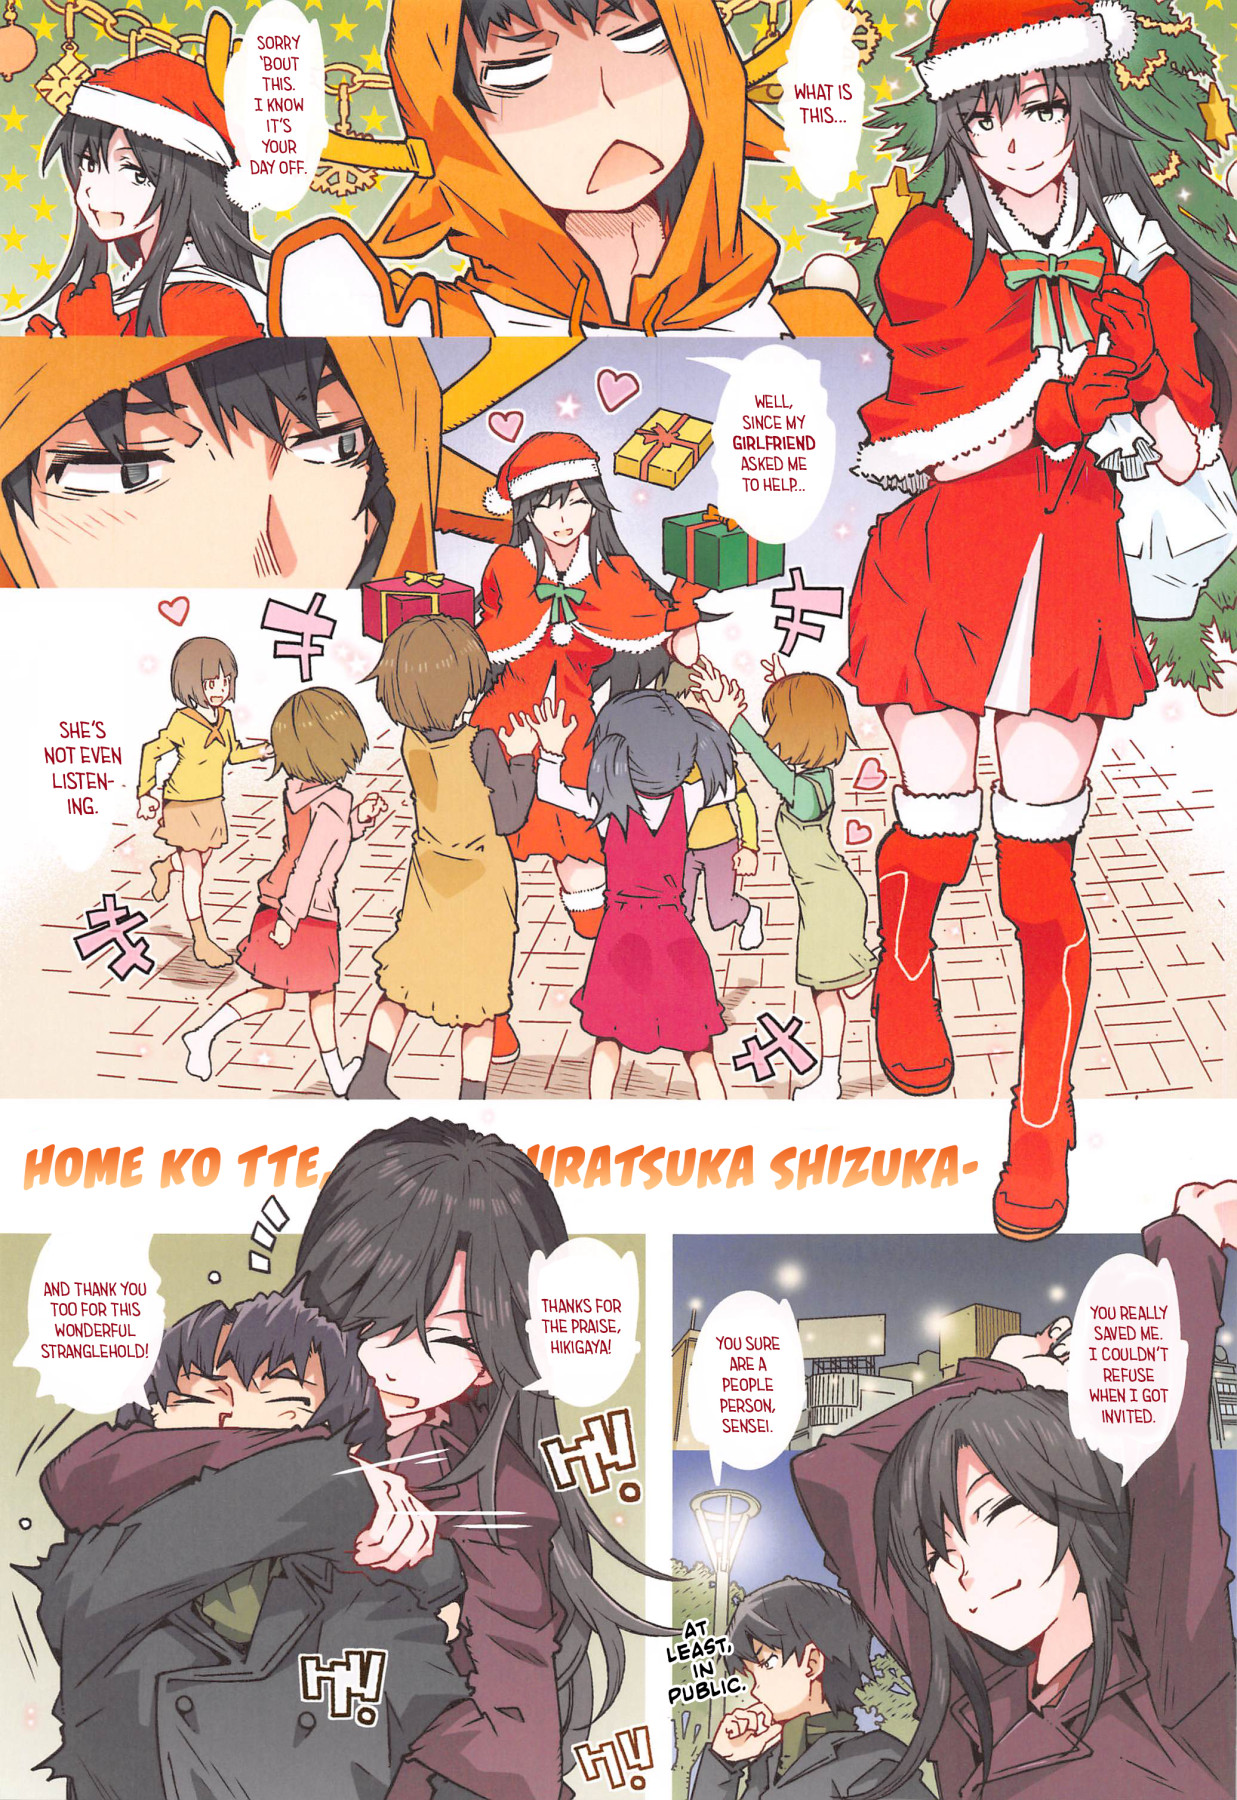 Hentai Manga Comic-How's This Home Girl? -Hiratsuka Shizuka--Read-2